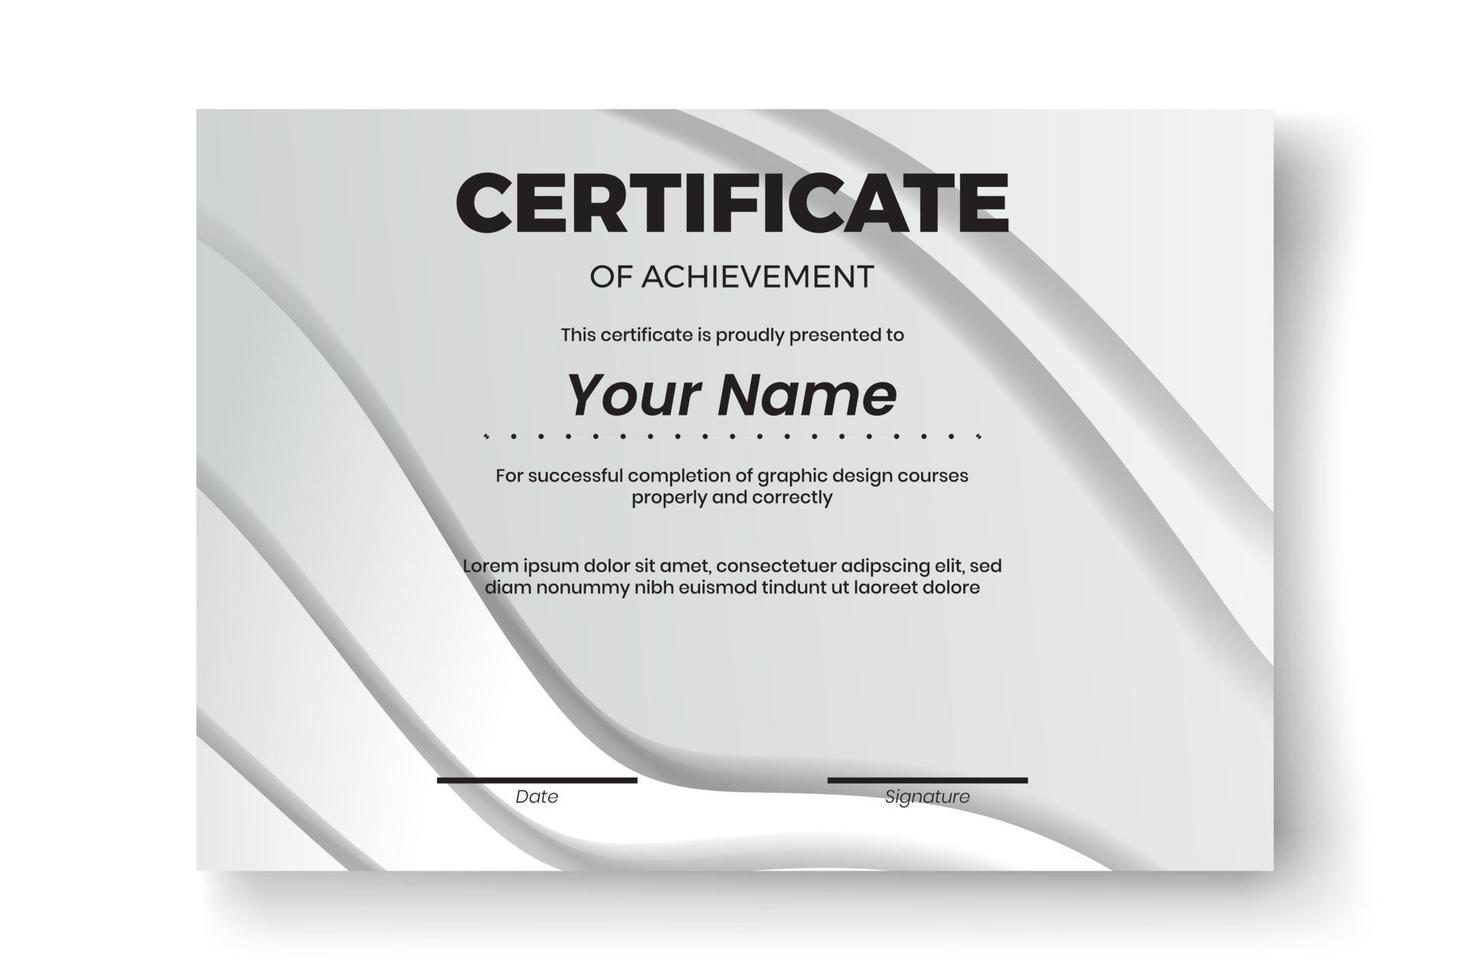 conception de certificat moderne avec fond géométrique abstrait vecteur